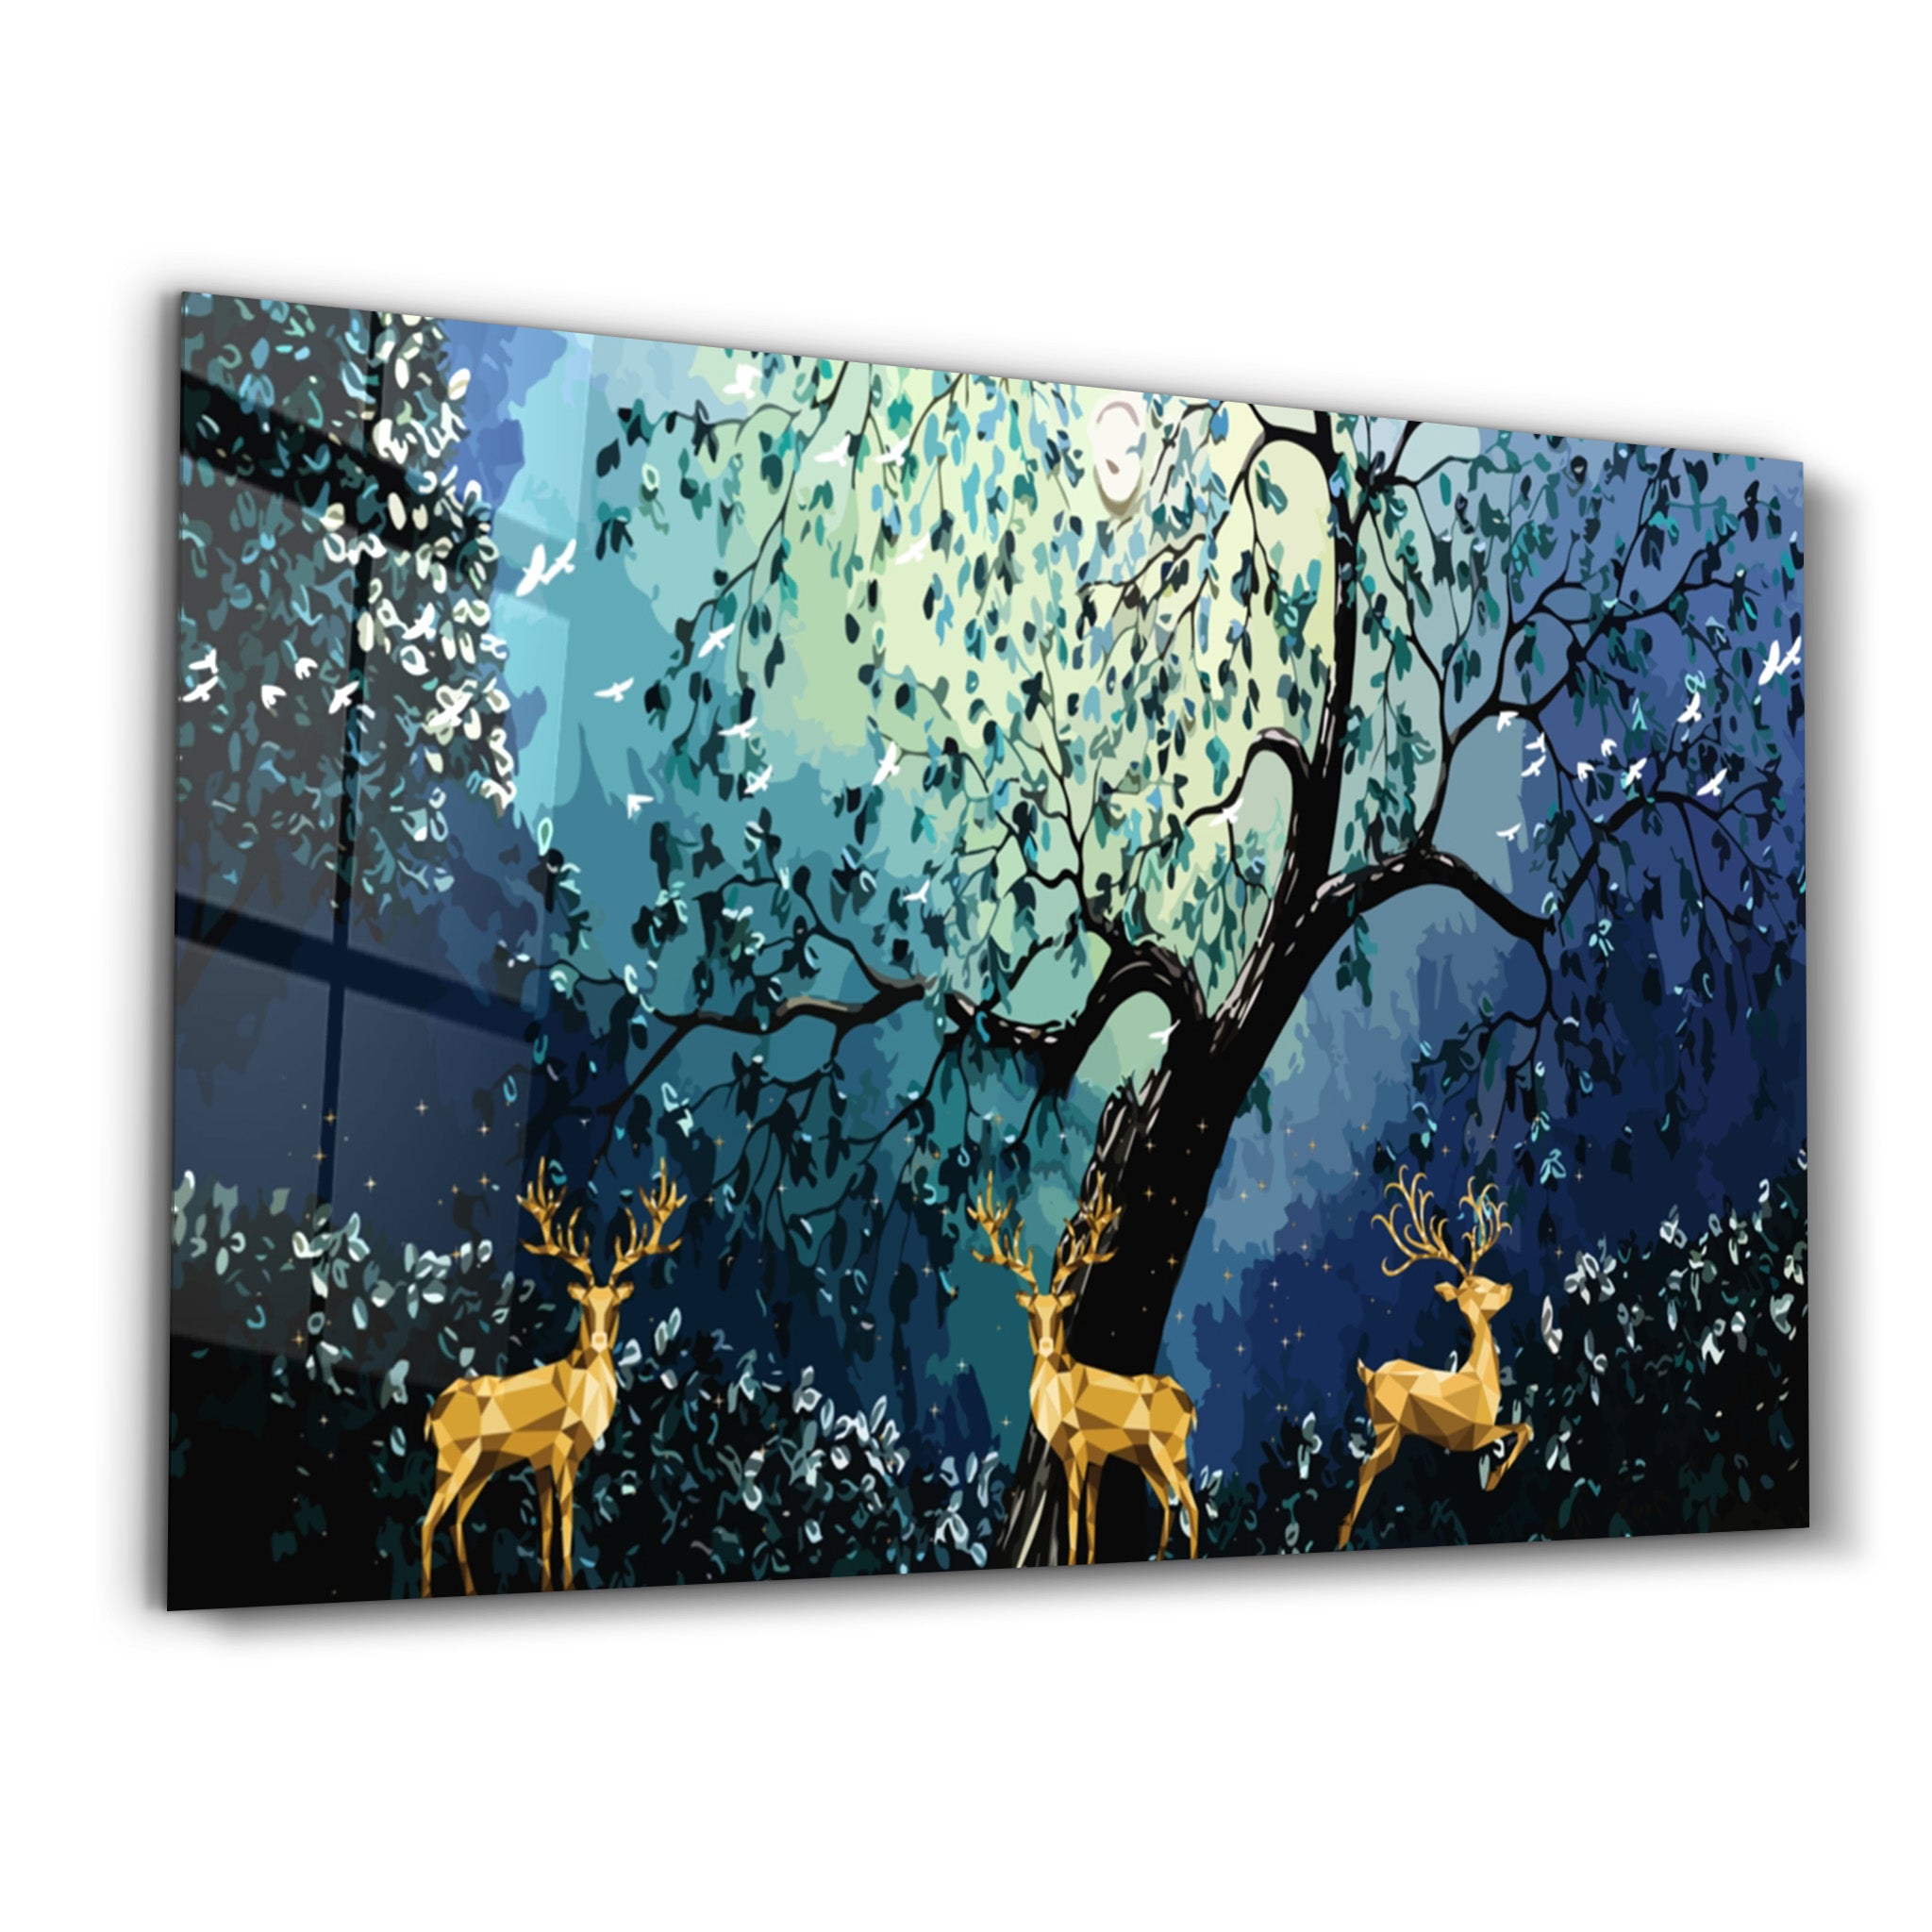 ・"Cute Forest"・Glass Wall Art - ArtDesigna Glass Printing Wall Art